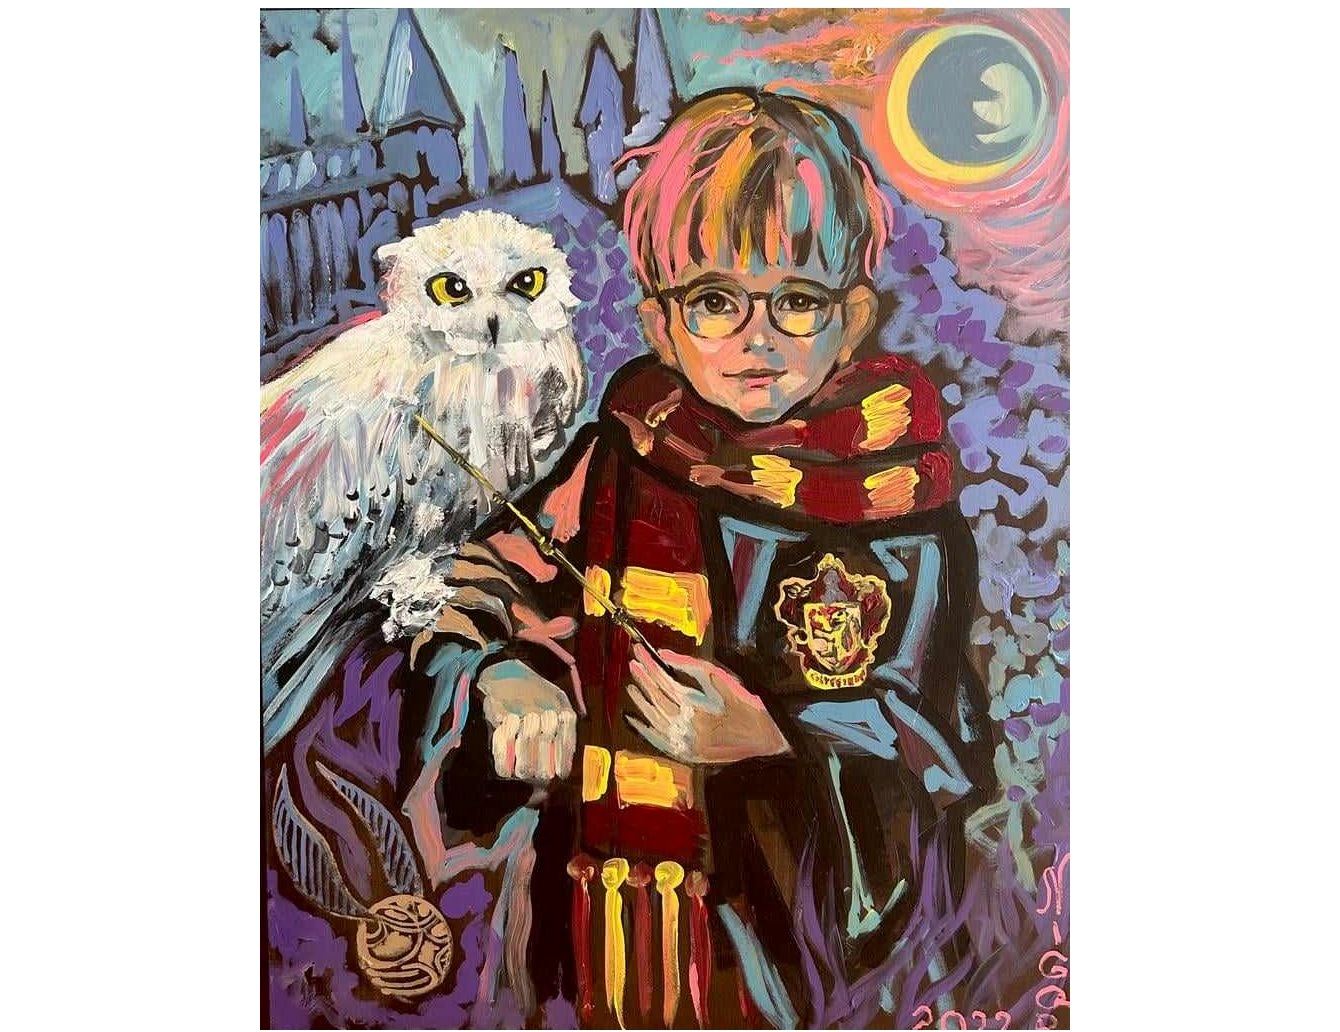 "Тариэль - маленький Гарри Поттер" – картина Нигяр Нариманбековой будет представлена в престижном арт-проекте во Франции